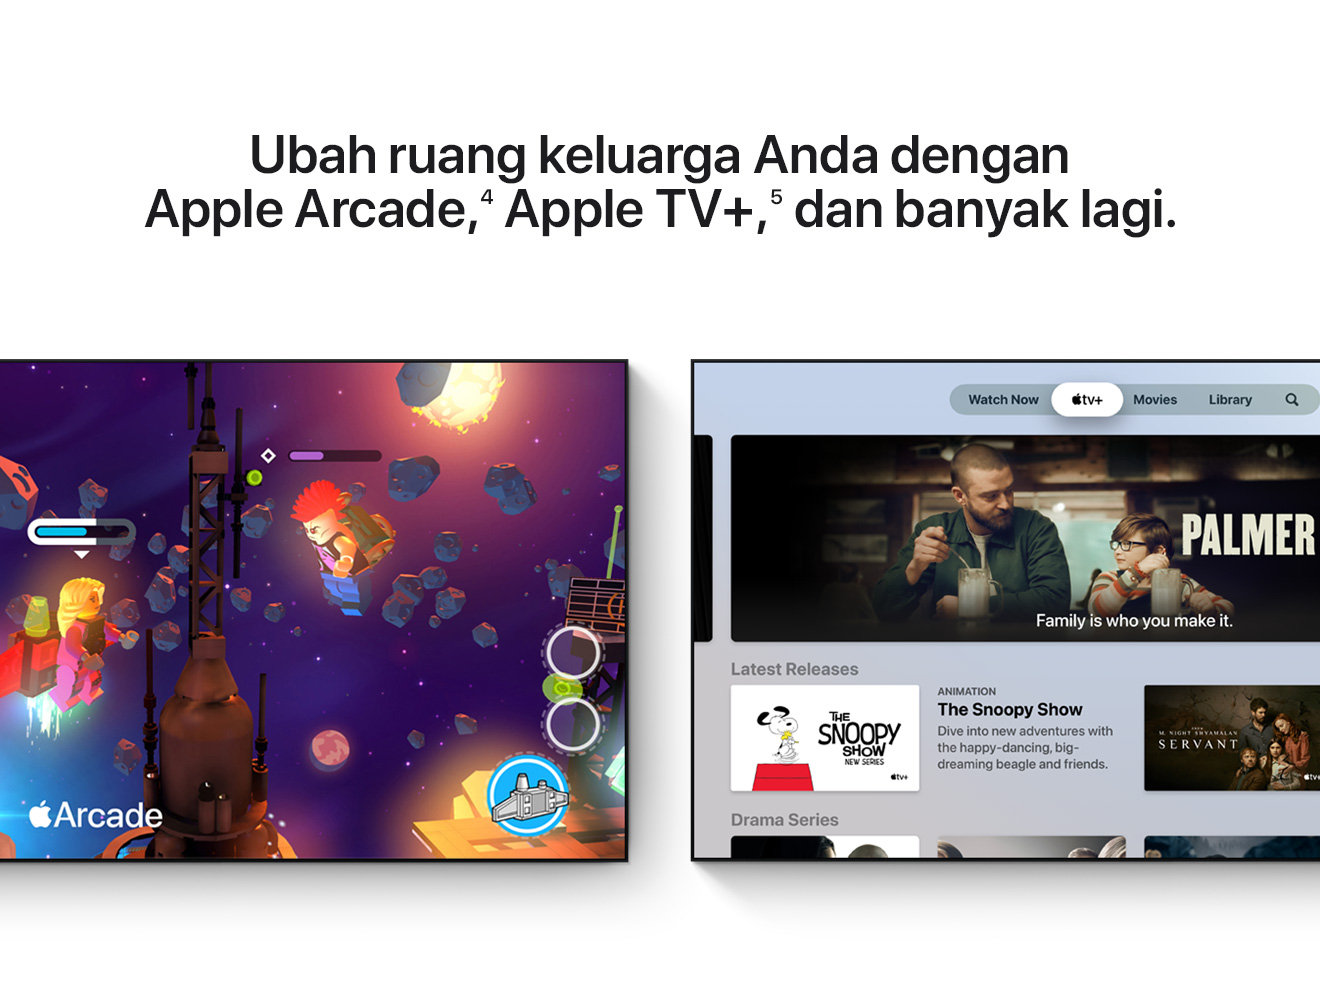 Ubah ruang keluarga Anda dengan Apple Arcade,(4) Apple TV+,(5) dan banyak lagi.